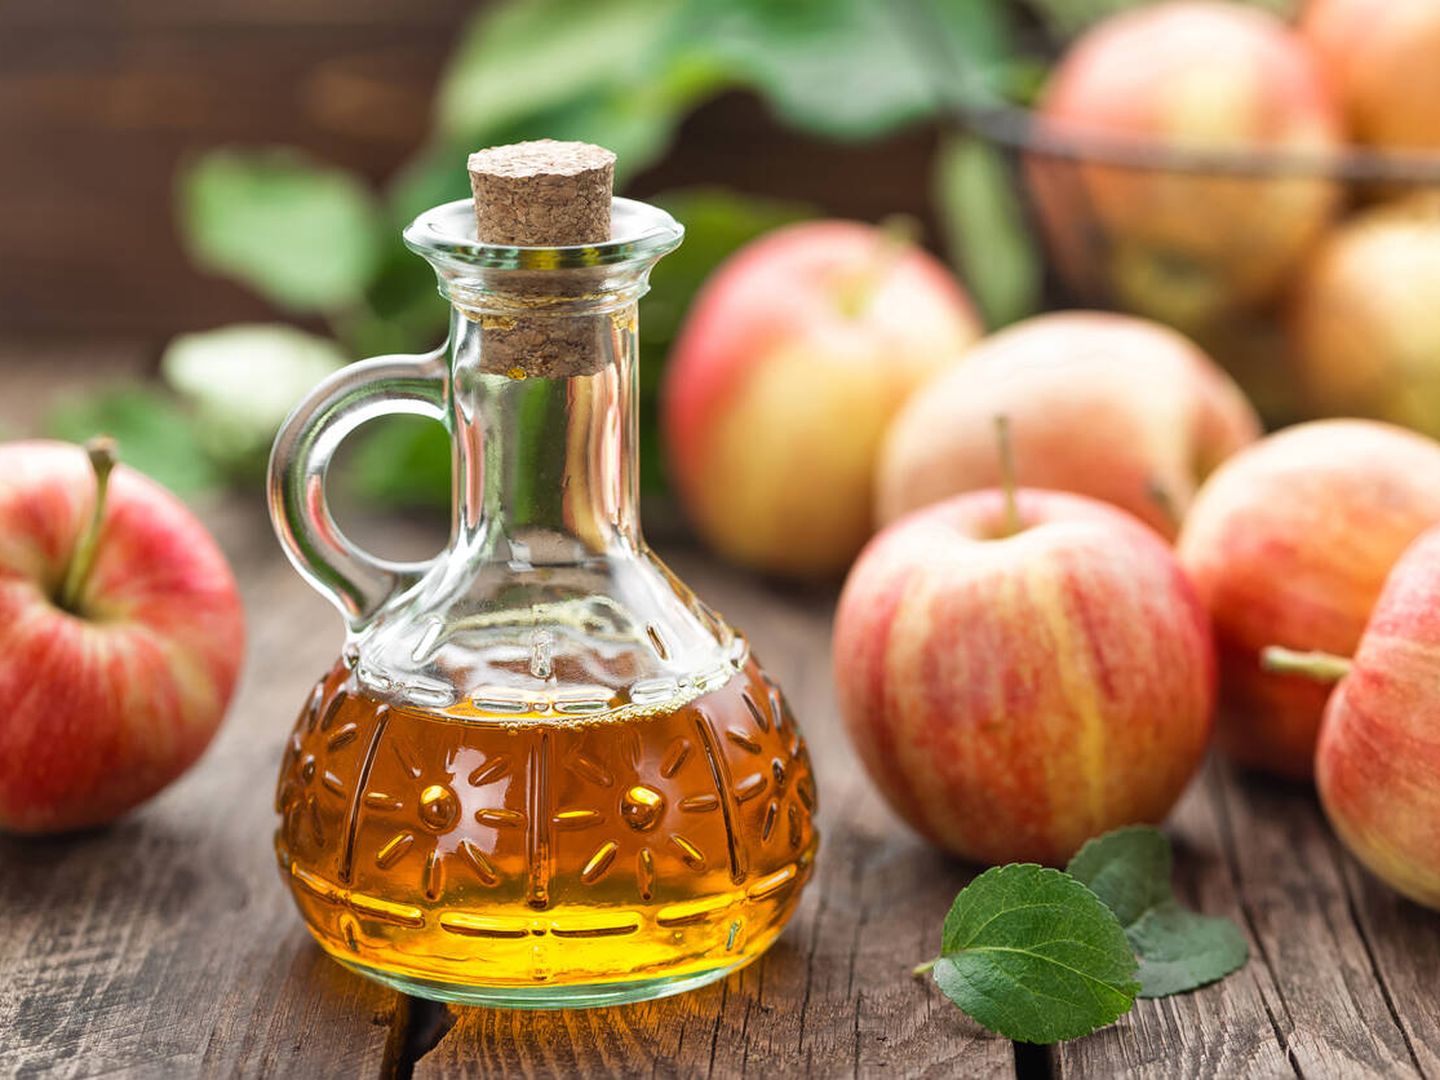 Al vinagre de manzana se le atribuyen propiedades antioxidantes. (iStock)